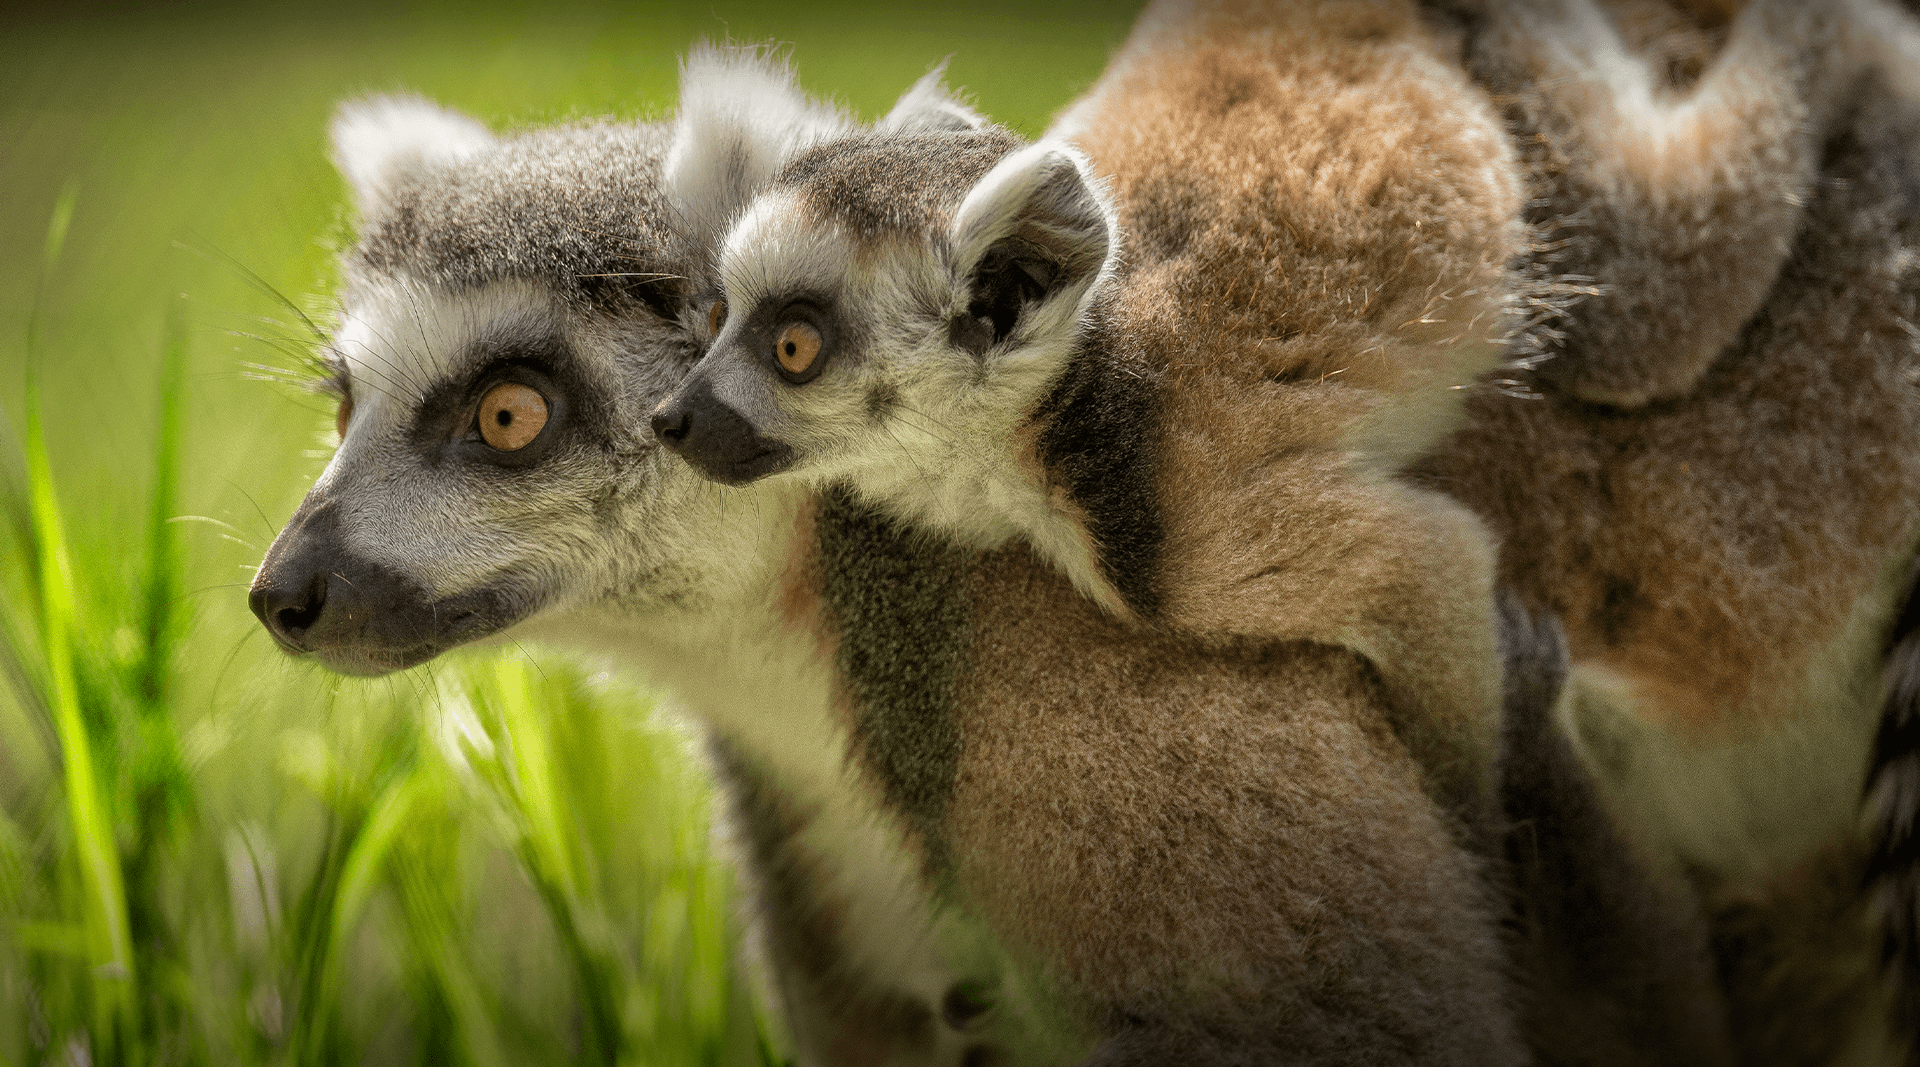 Lemur baby looks over mom lemur's shoulder.